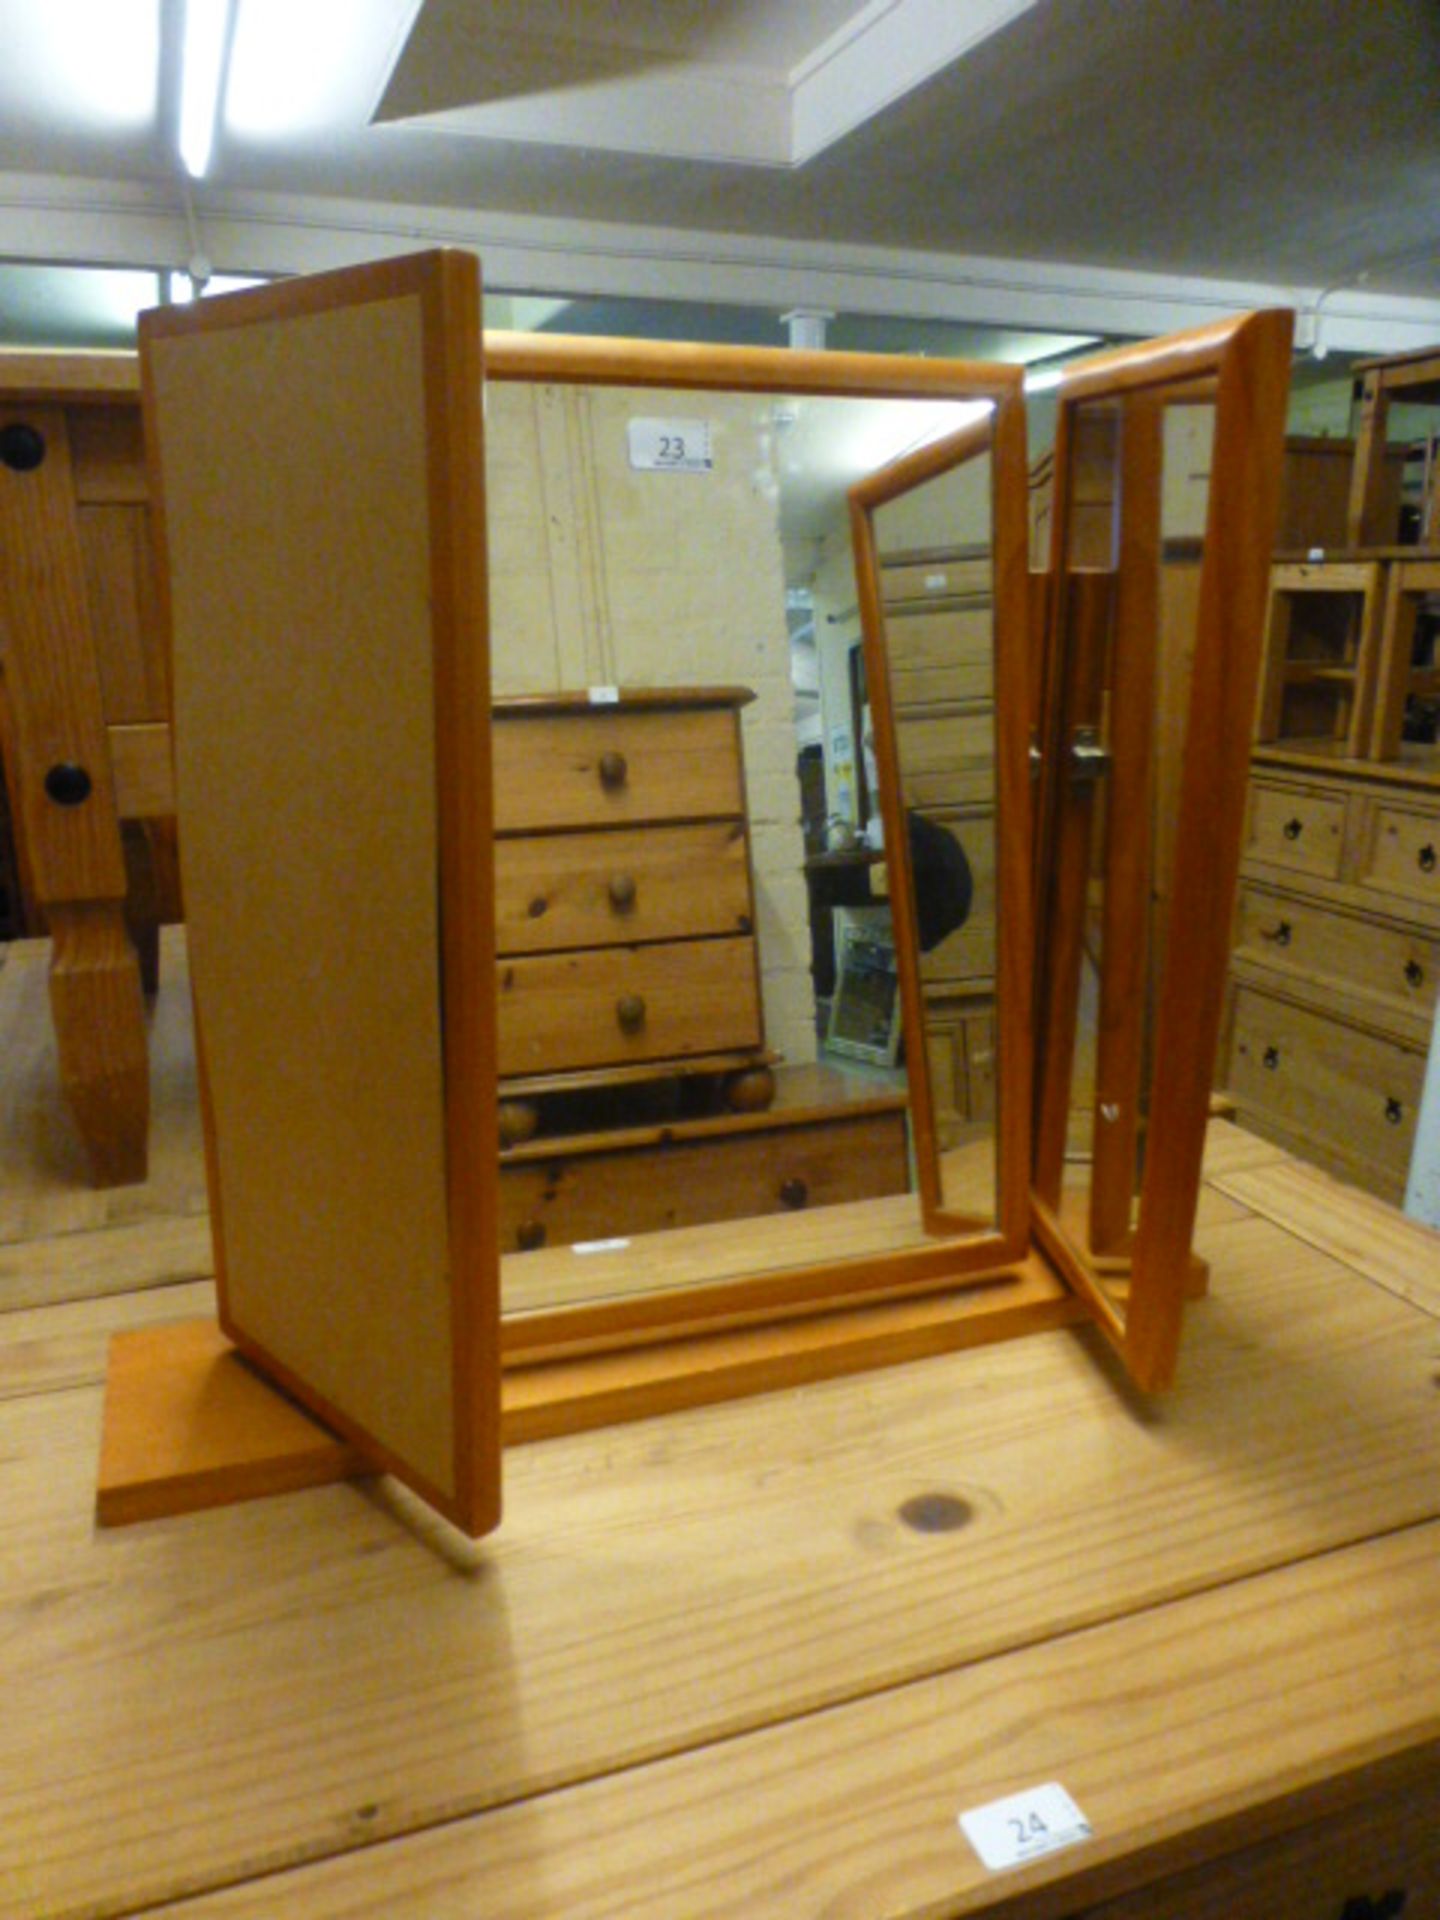 A pine framed triple vanity mirror